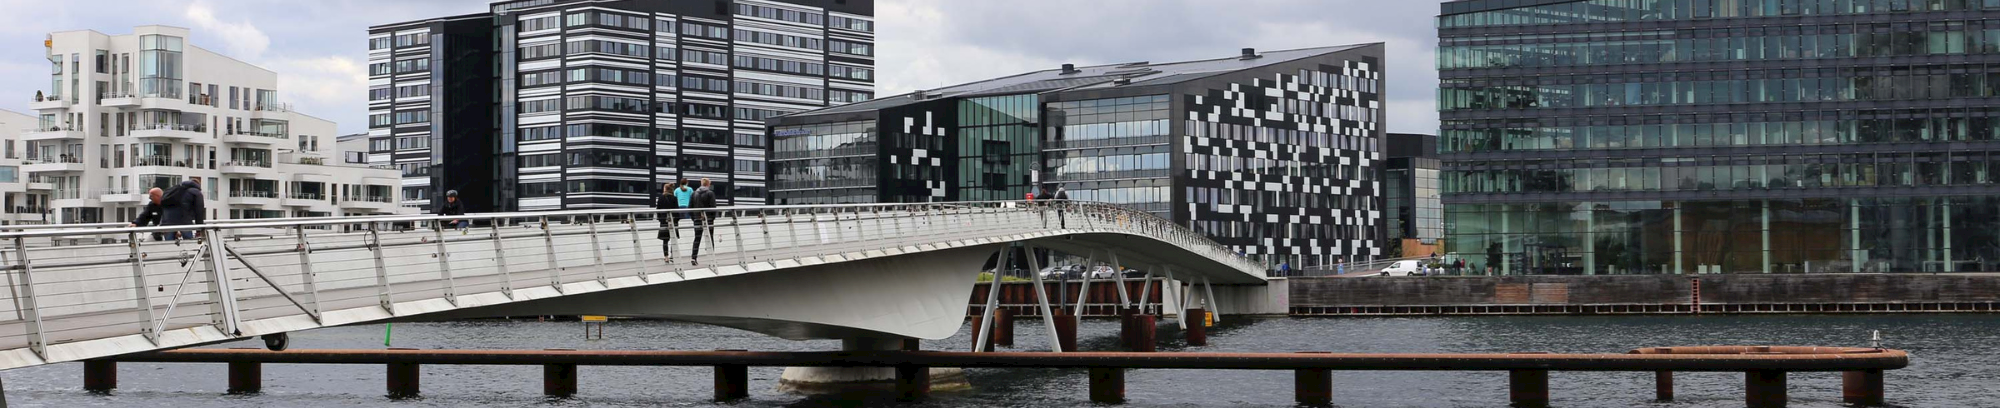 Taghavnerne og Sydhavn Foto Sandra Gonon arkitekturbilleder.dk